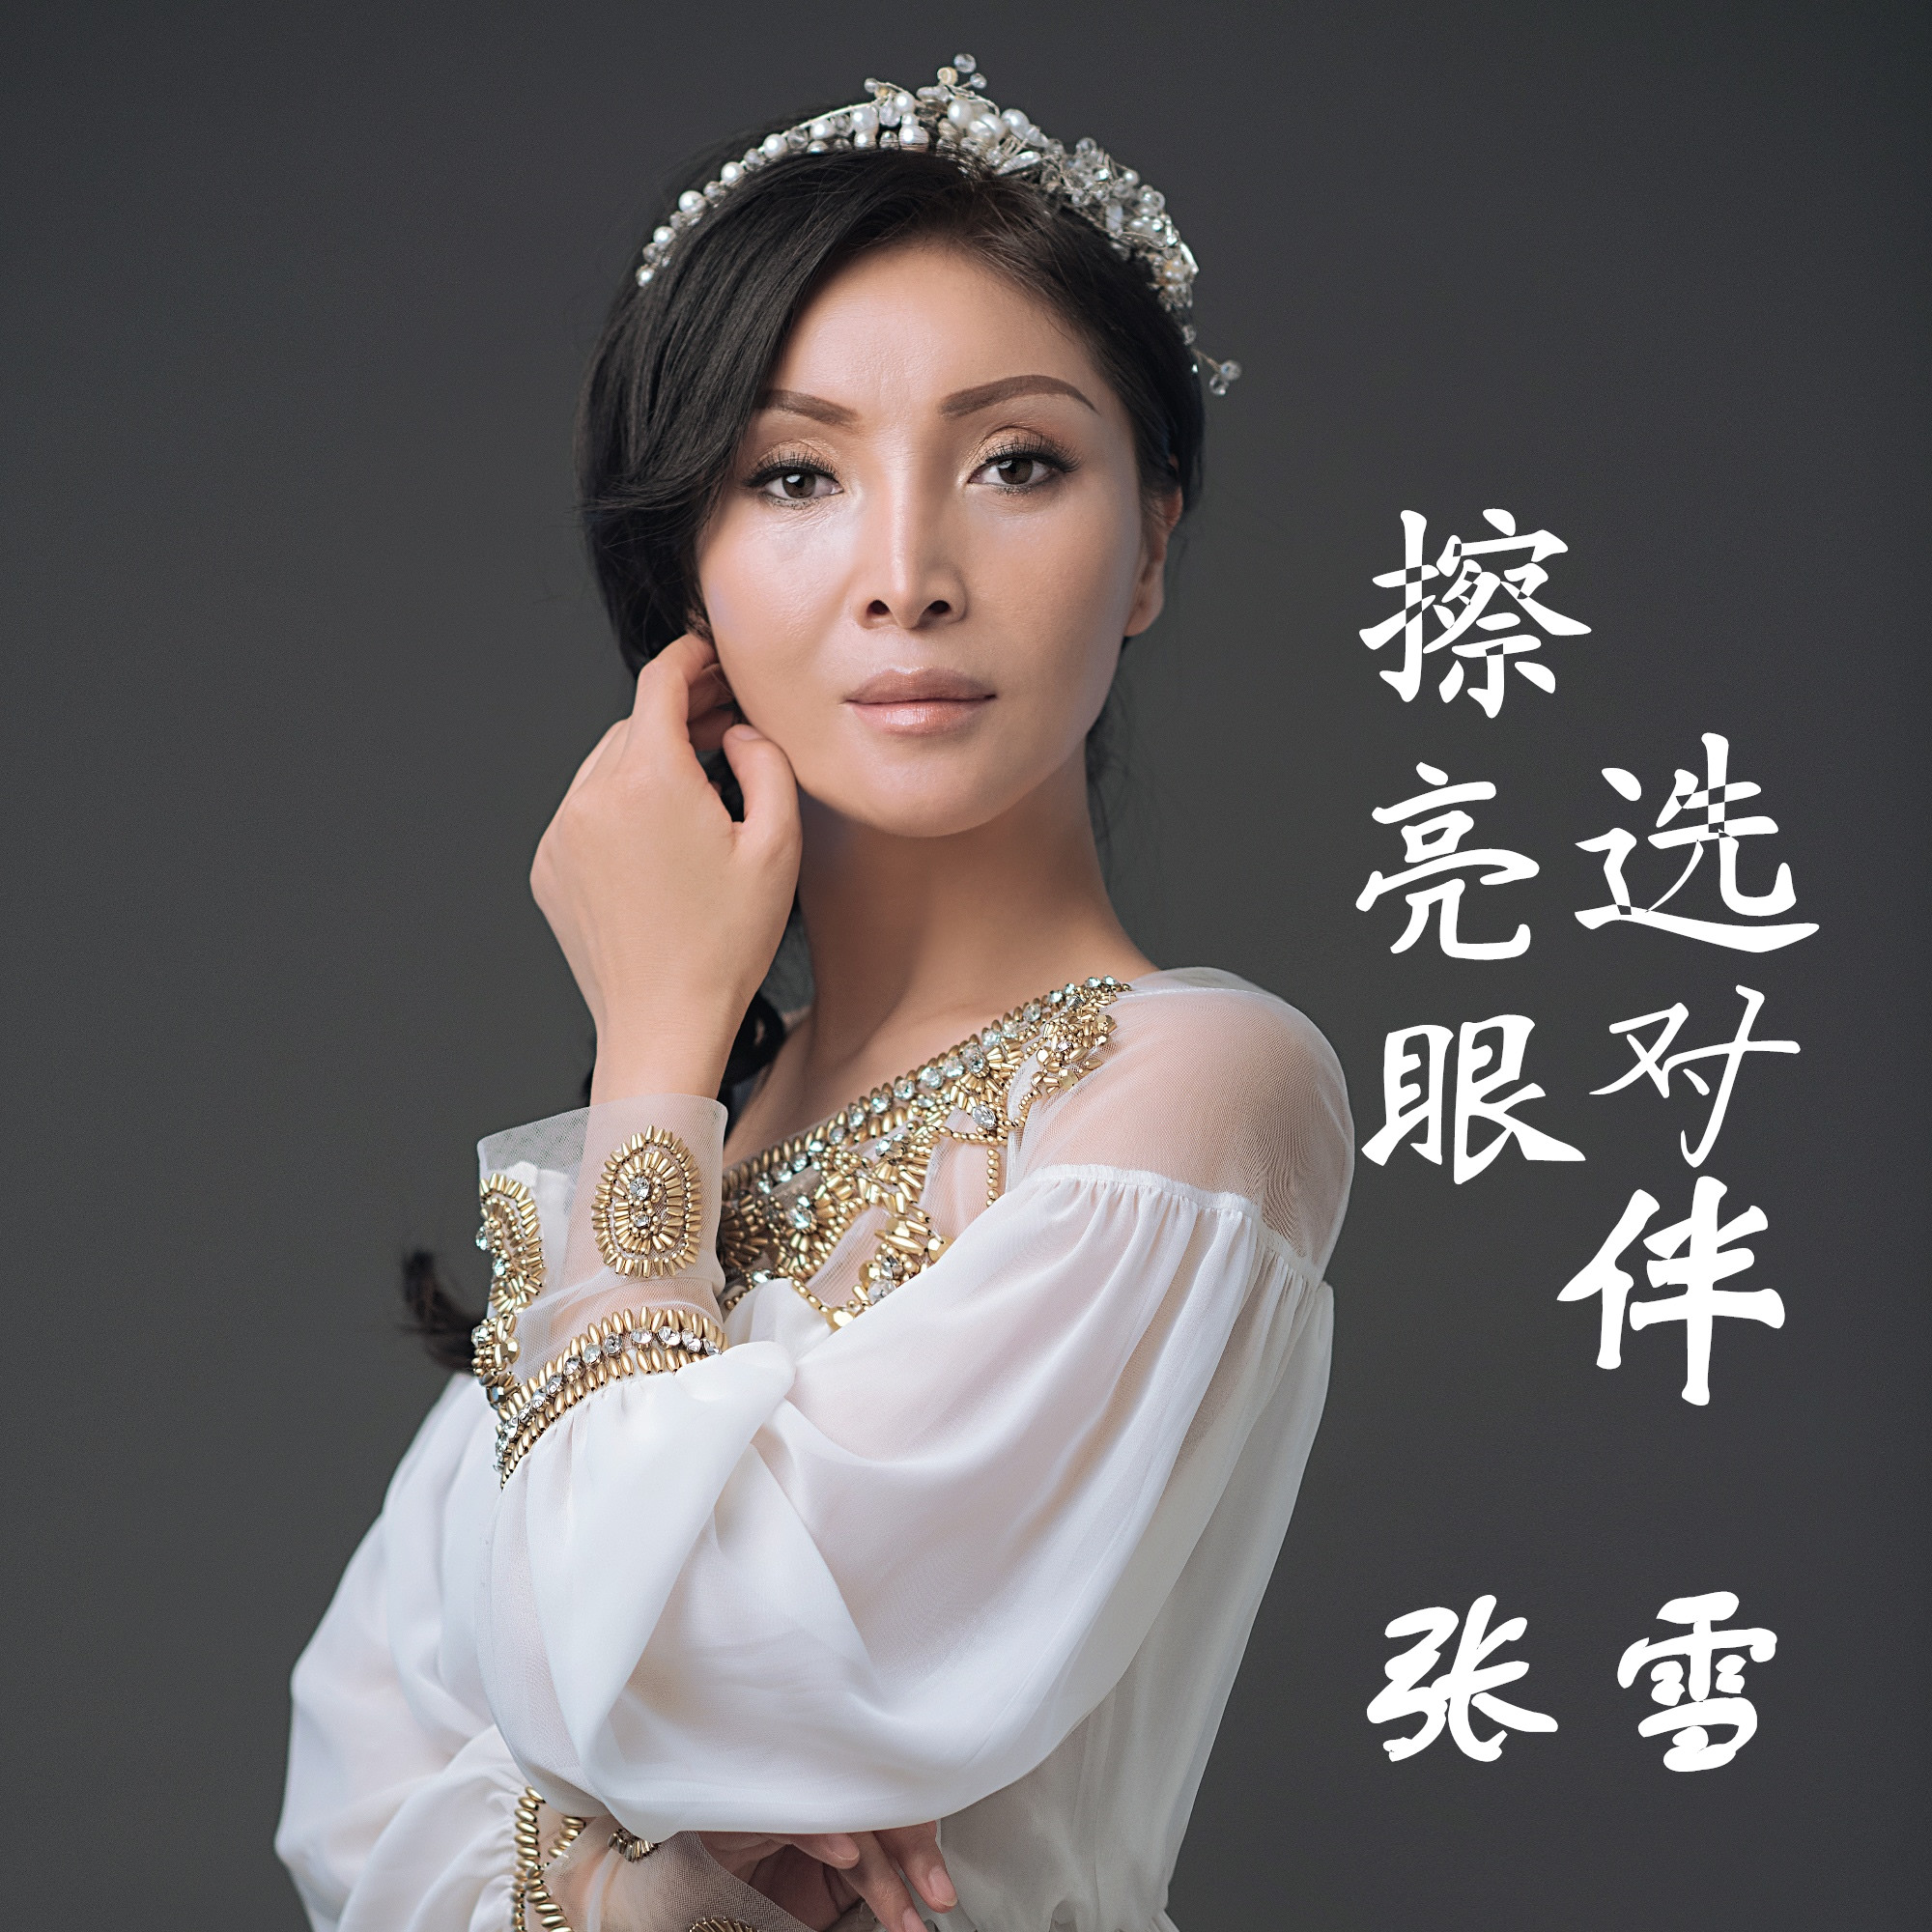 张雪,华语女歌手,出生于陕西西安,从小喜爱音乐,酷爱学习,多次下基层